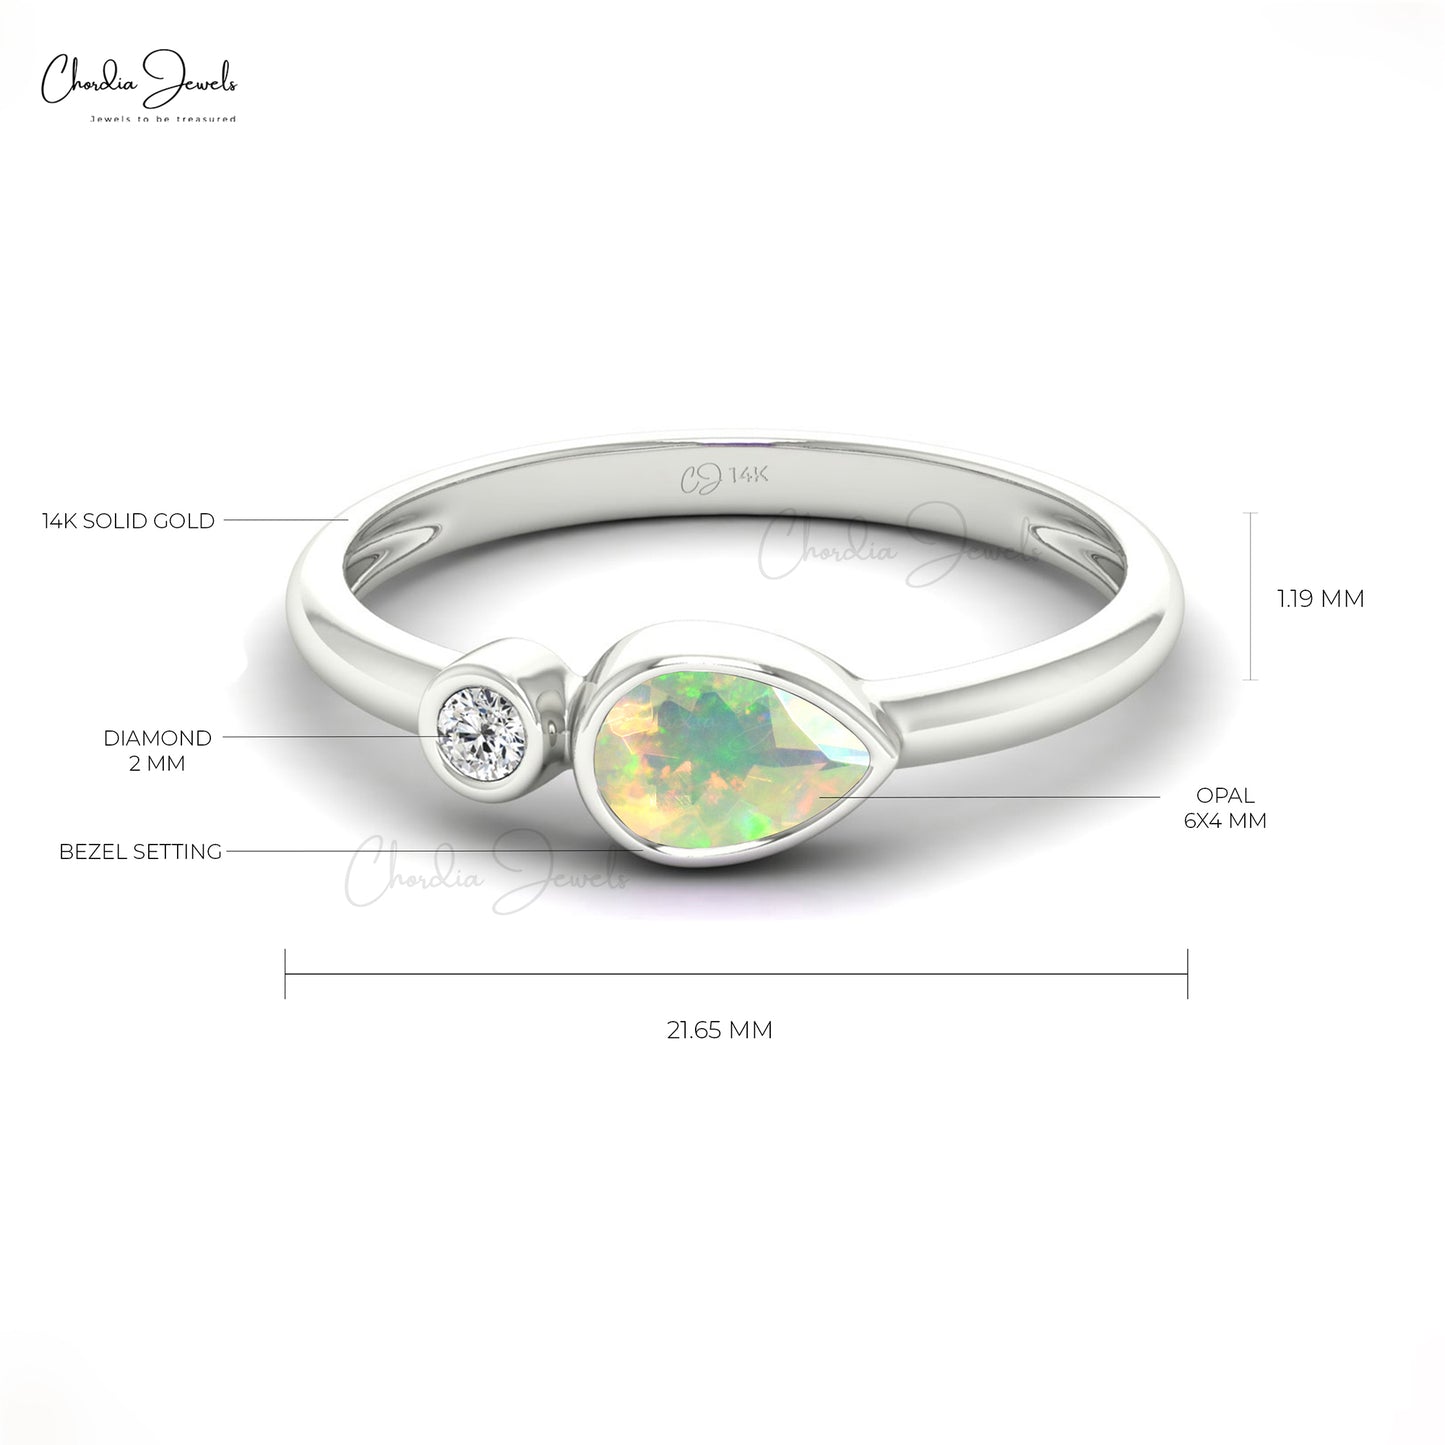 Genuine Ethiopian Opal Dainty Diamond Ring 14k Real Gold 6x4mm Pear Cut Gemstone Minimalist Ring For Birthday Gift